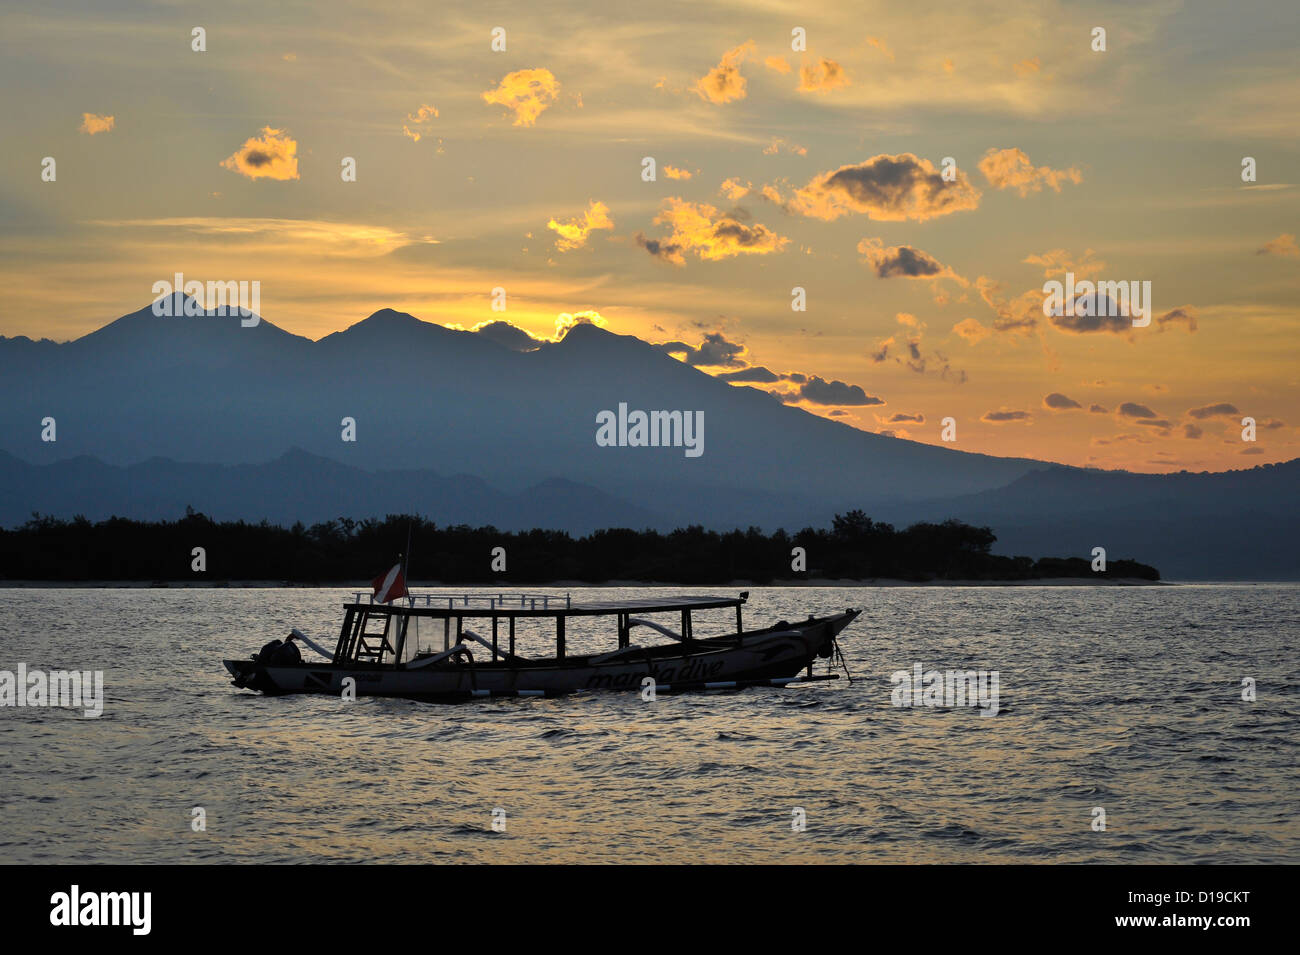 Sunrise in Gili Trawangan, indonesia Stock Photo